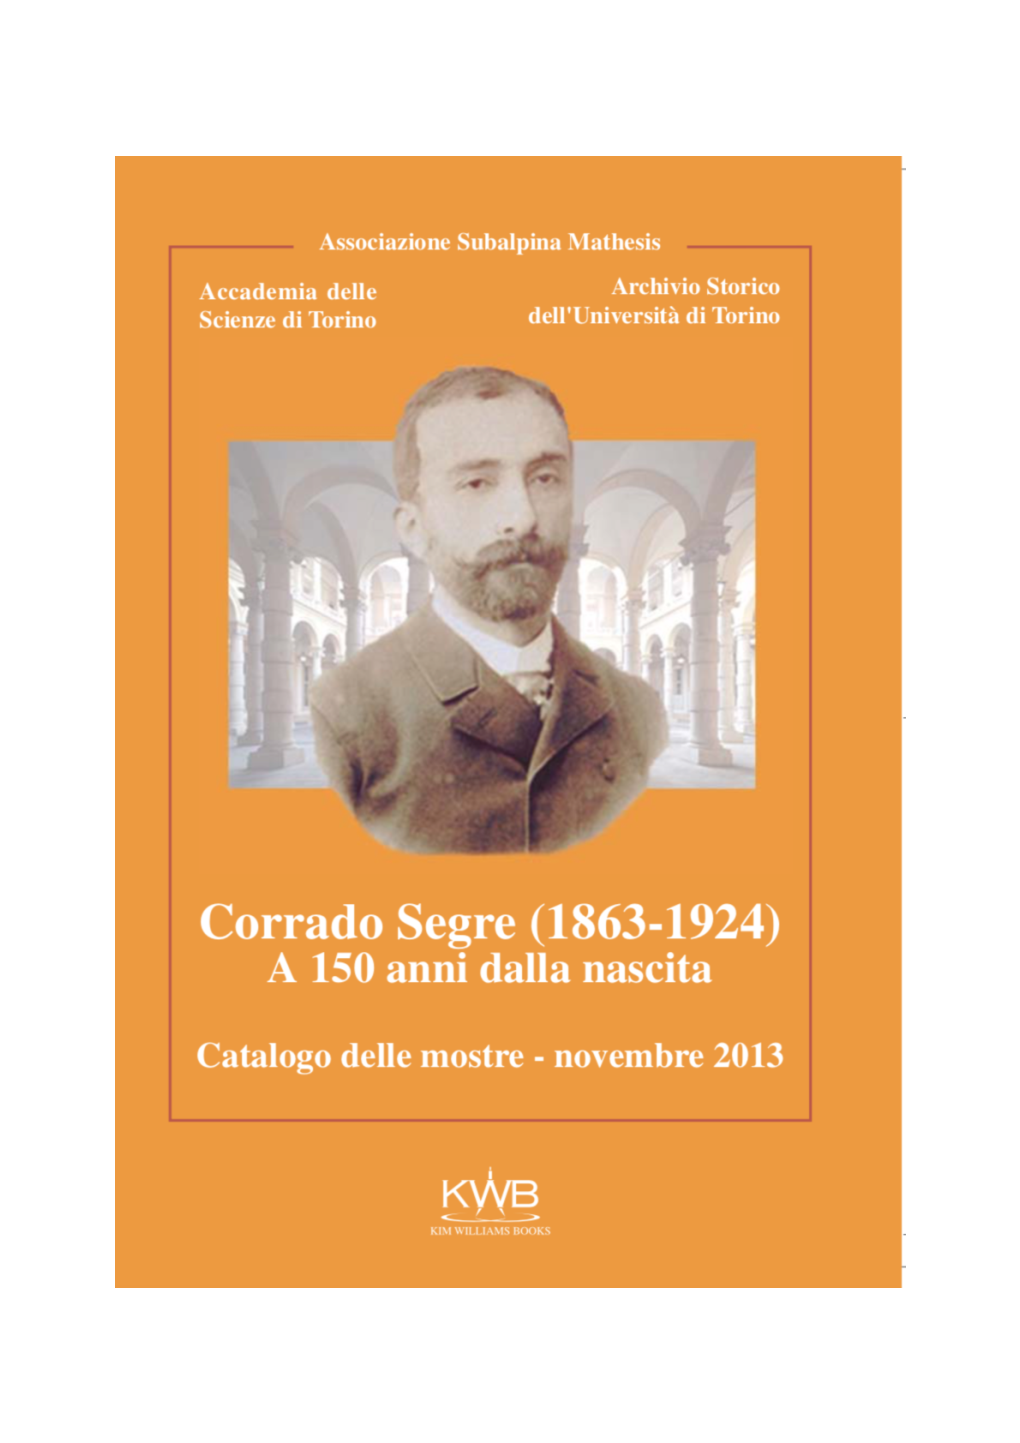 Mostra Documentaria – Archivio Storico Dell’Università Di Torino